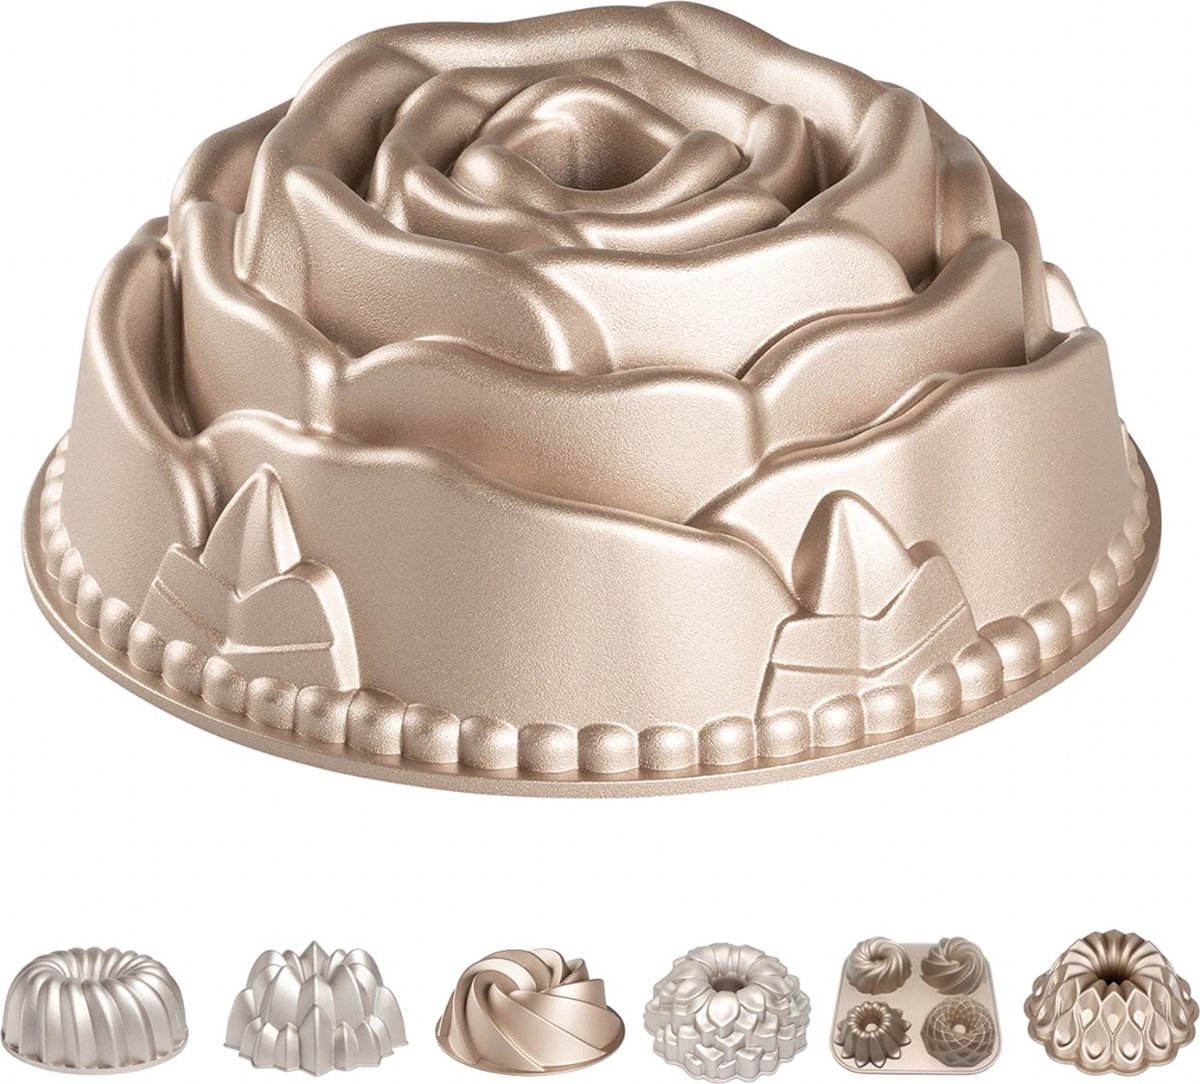 Erreke Cakevorm, Non Stick en zeer Duurzaam Gegoten Aluminium, Rose Goud Gebakvorm, 24cm Diameter Taartvorm, 2 Liter Inhoud, Cake Vorm (Rose)